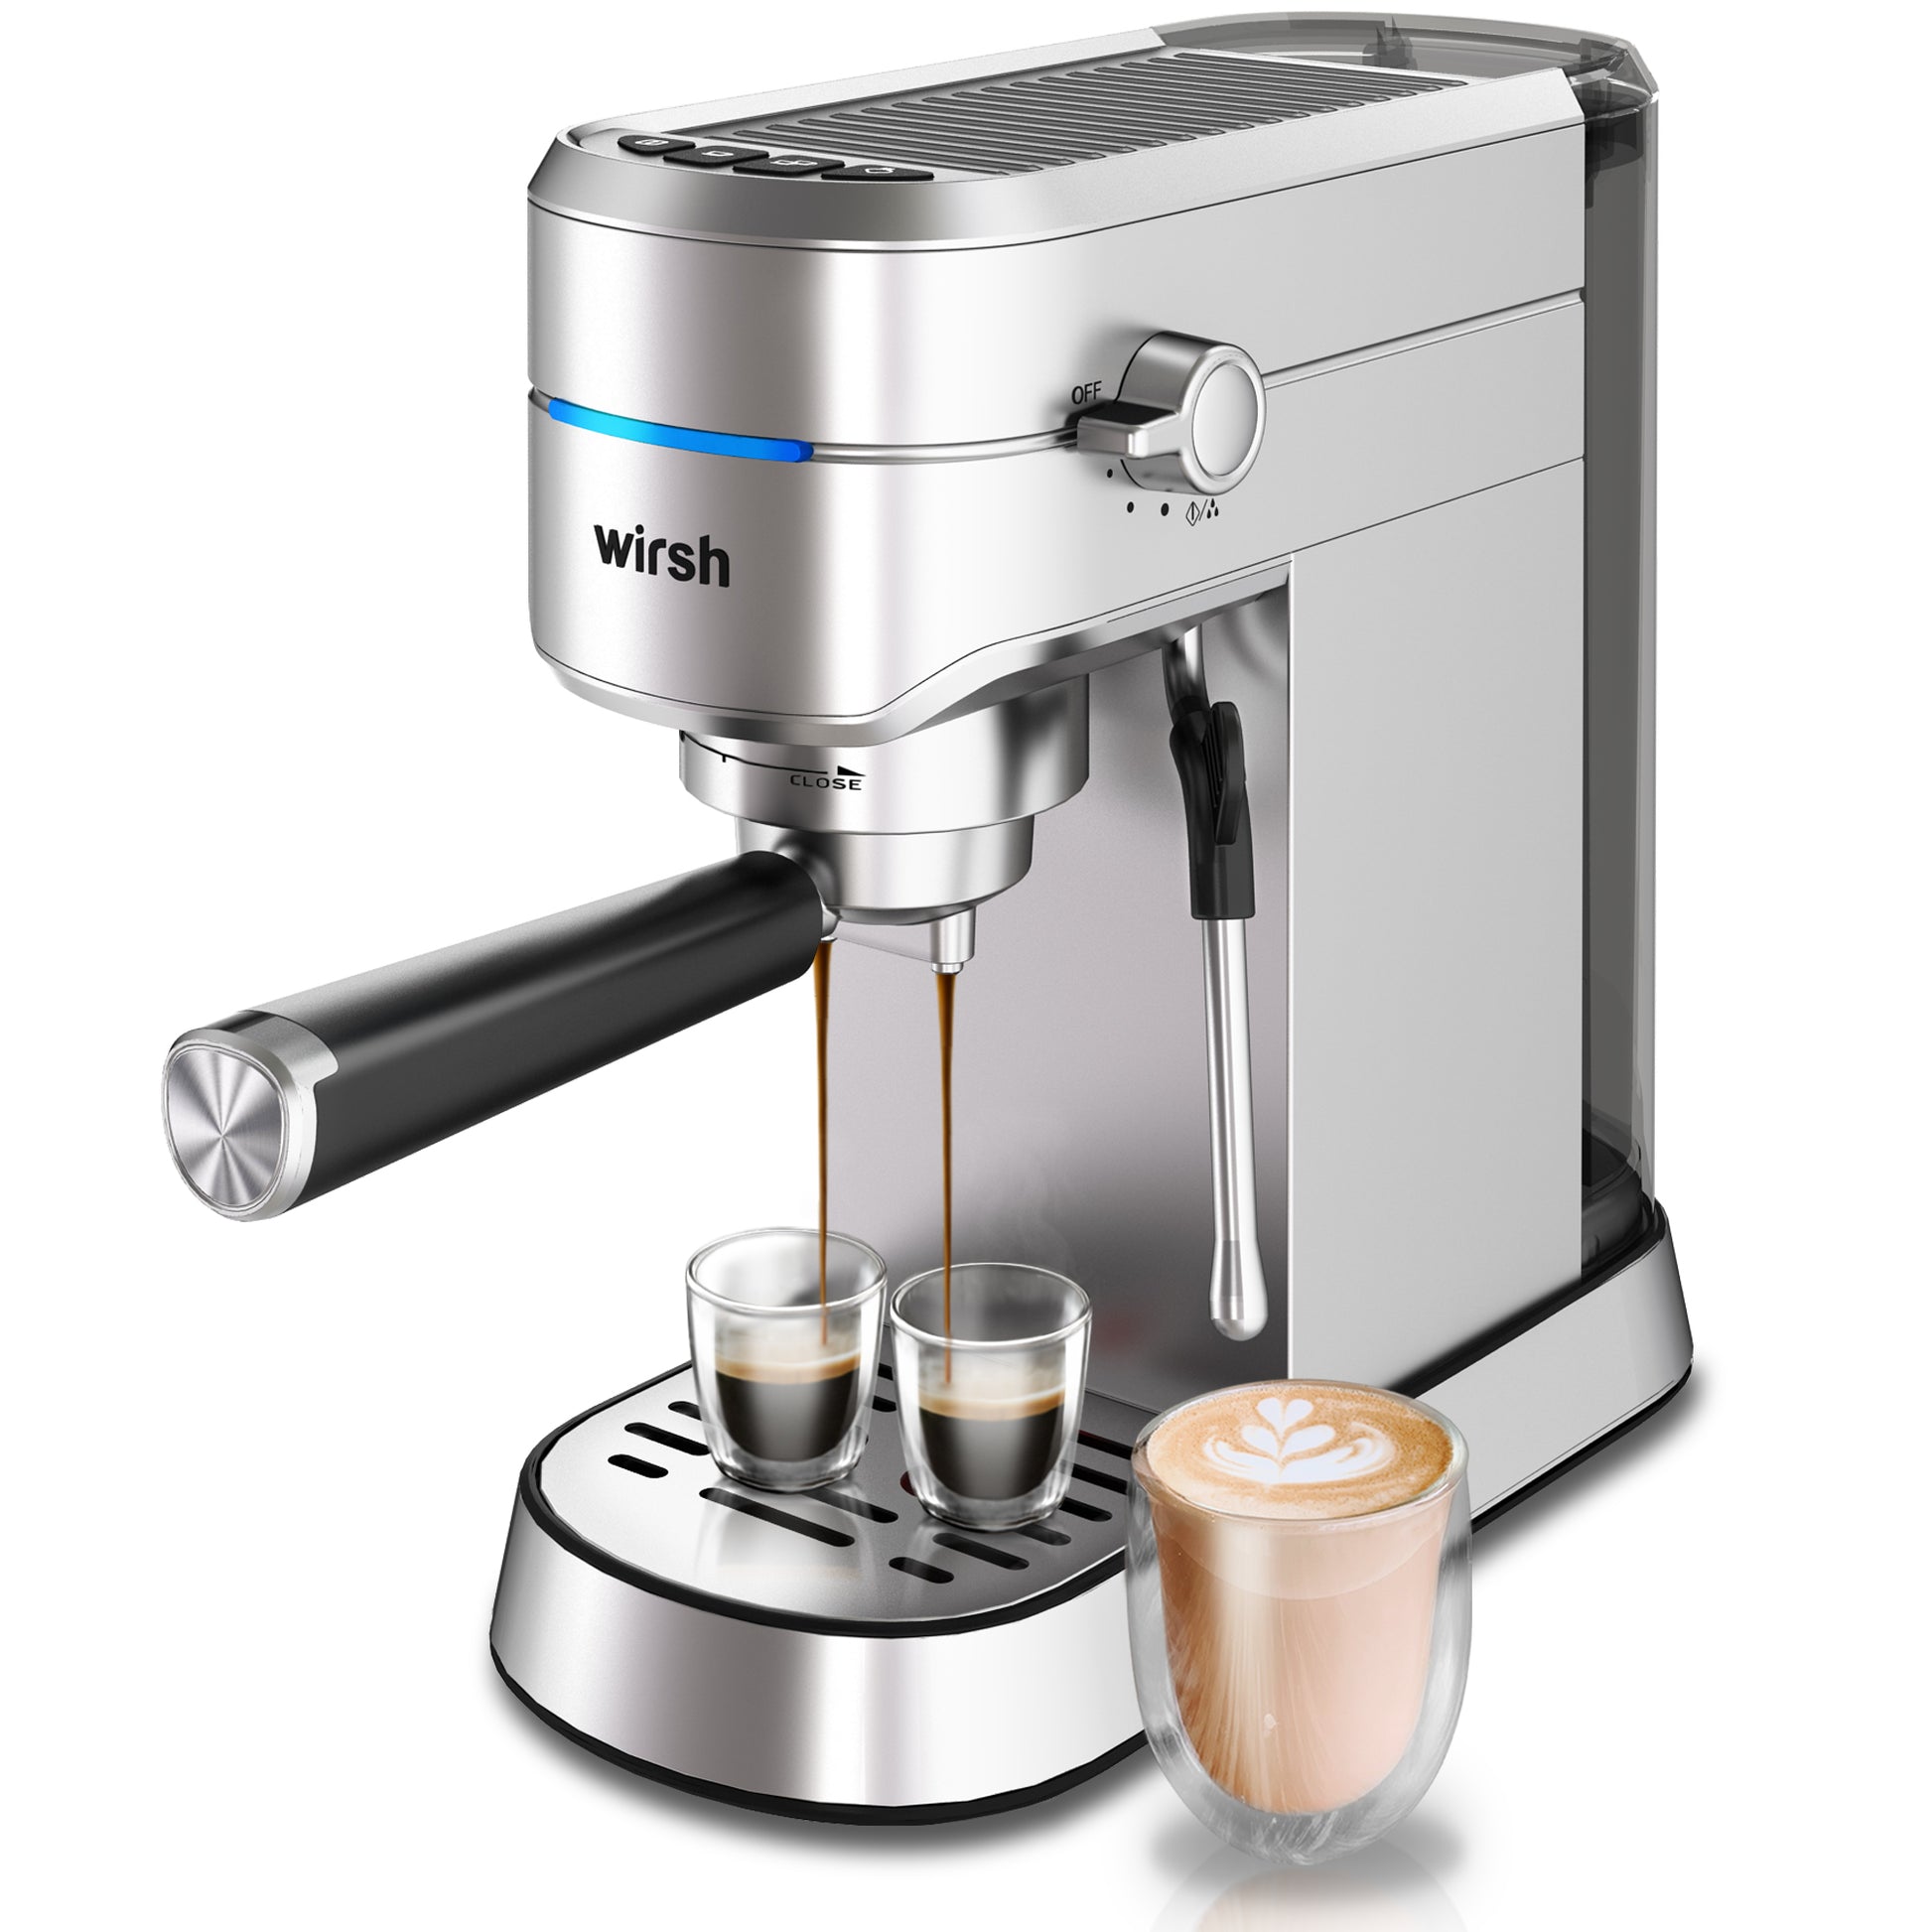 <img src="espresso machine.jpg" alt="wirsh 15bar stainless steel espresso machine"/>